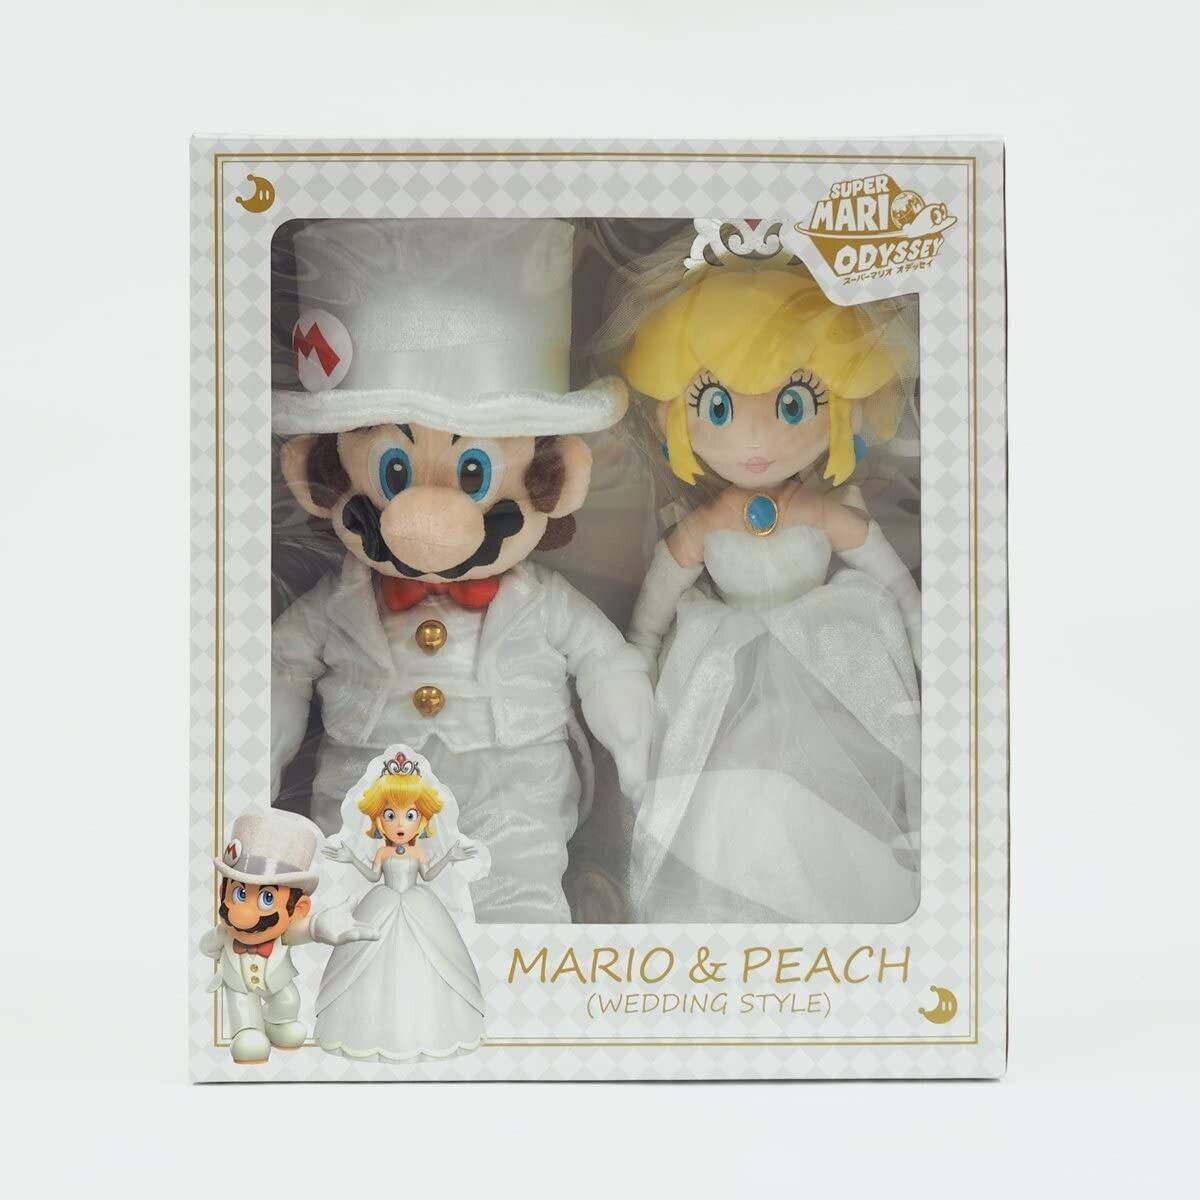 Super Mario Odyssey Mario & Peach Wedding Set / Stuffed Toy Plush Doll Japan